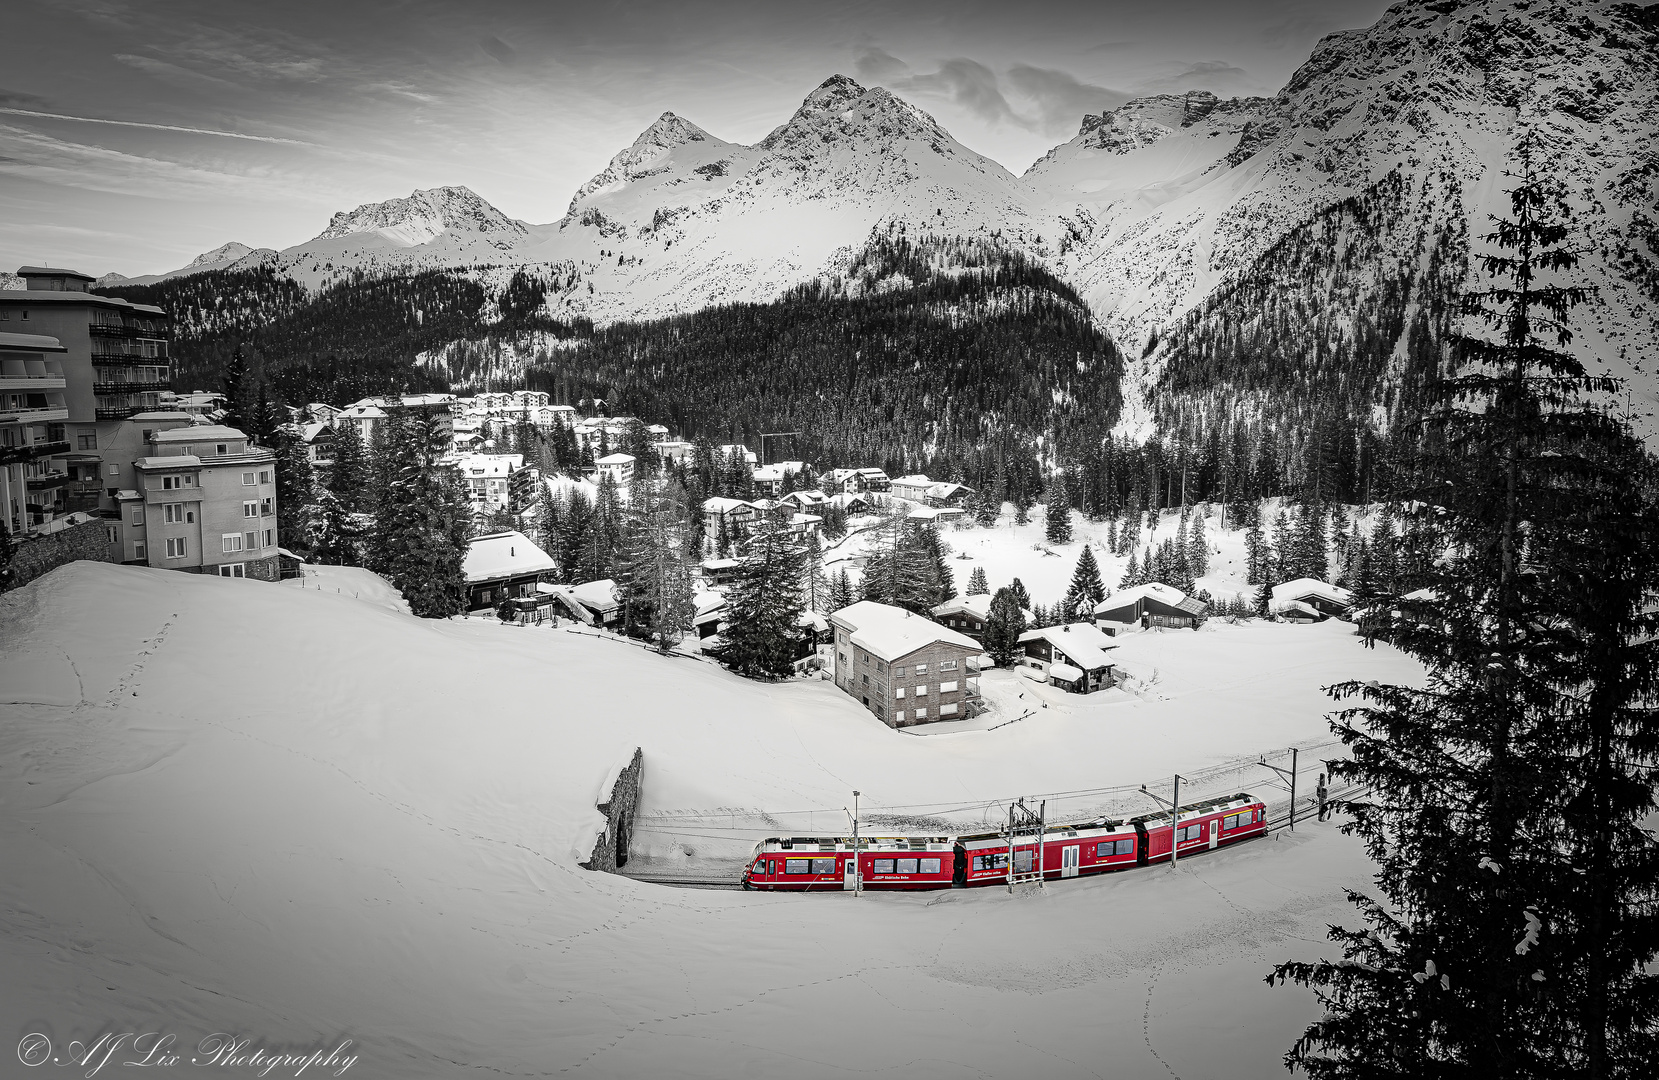 Rhätische Bahn in Arosa, Switzerland 